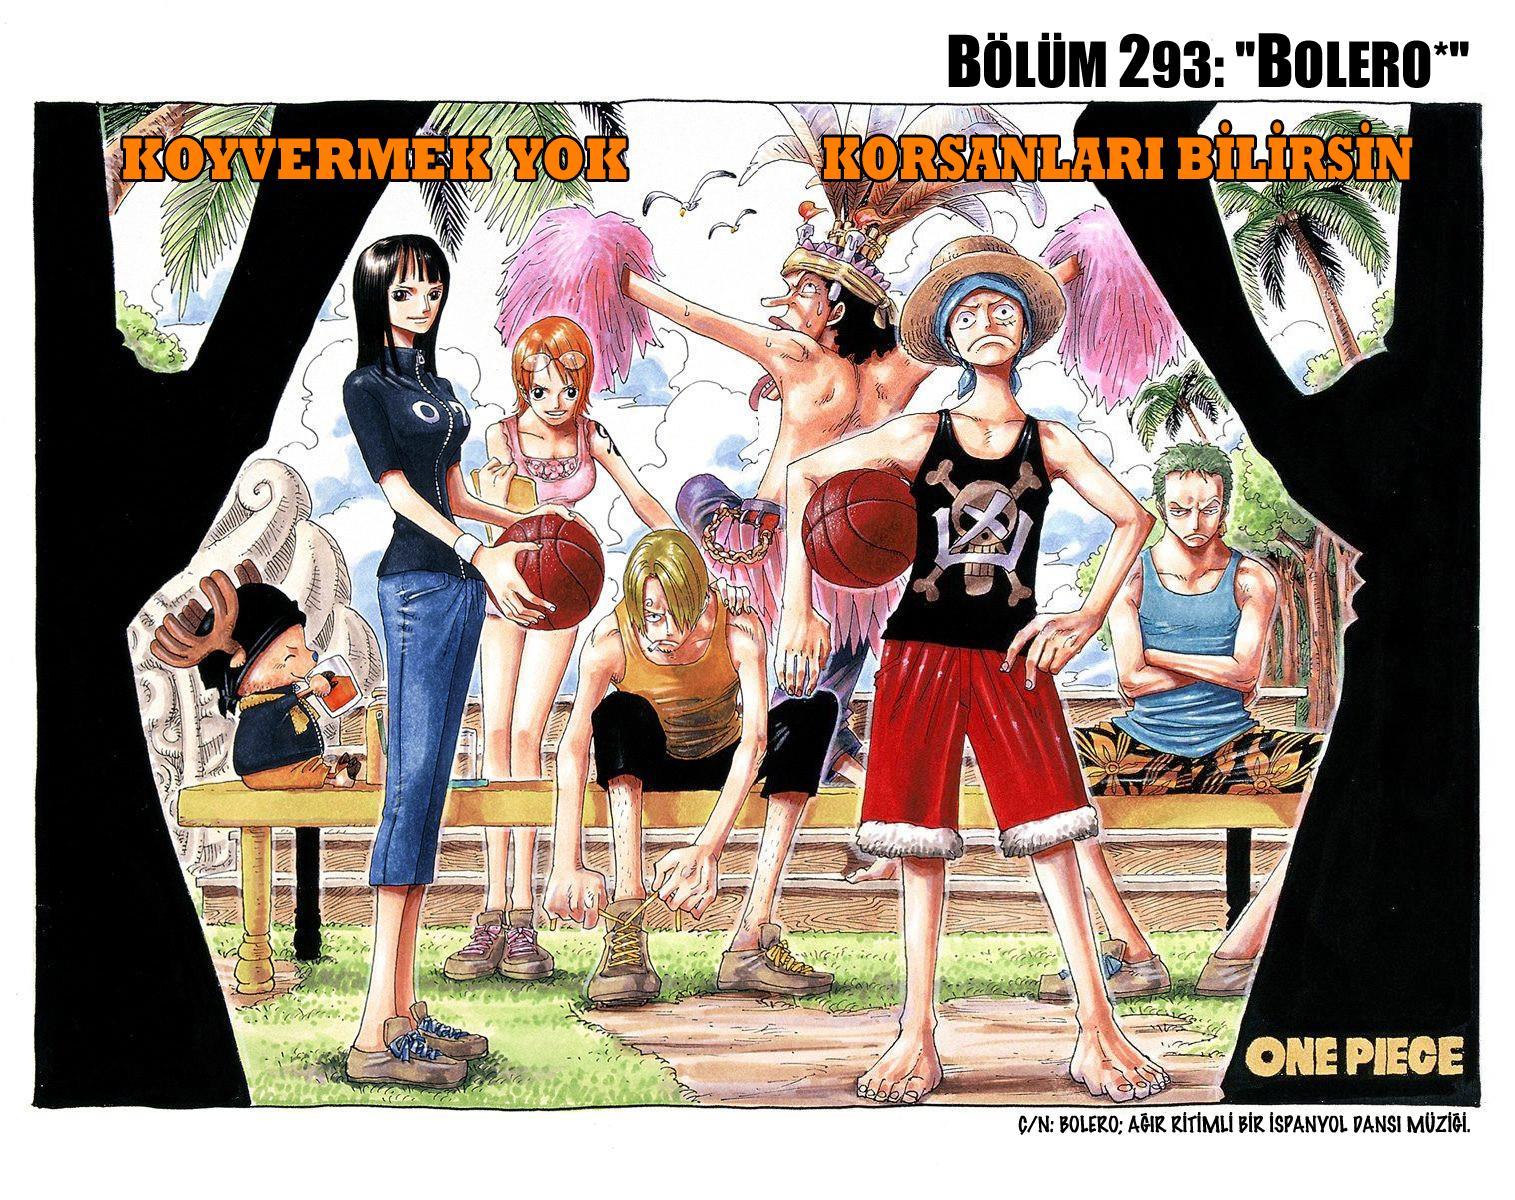 One Piece [Renkli] mangasının 0293 bölümünün 2. sayfasını okuyorsunuz.